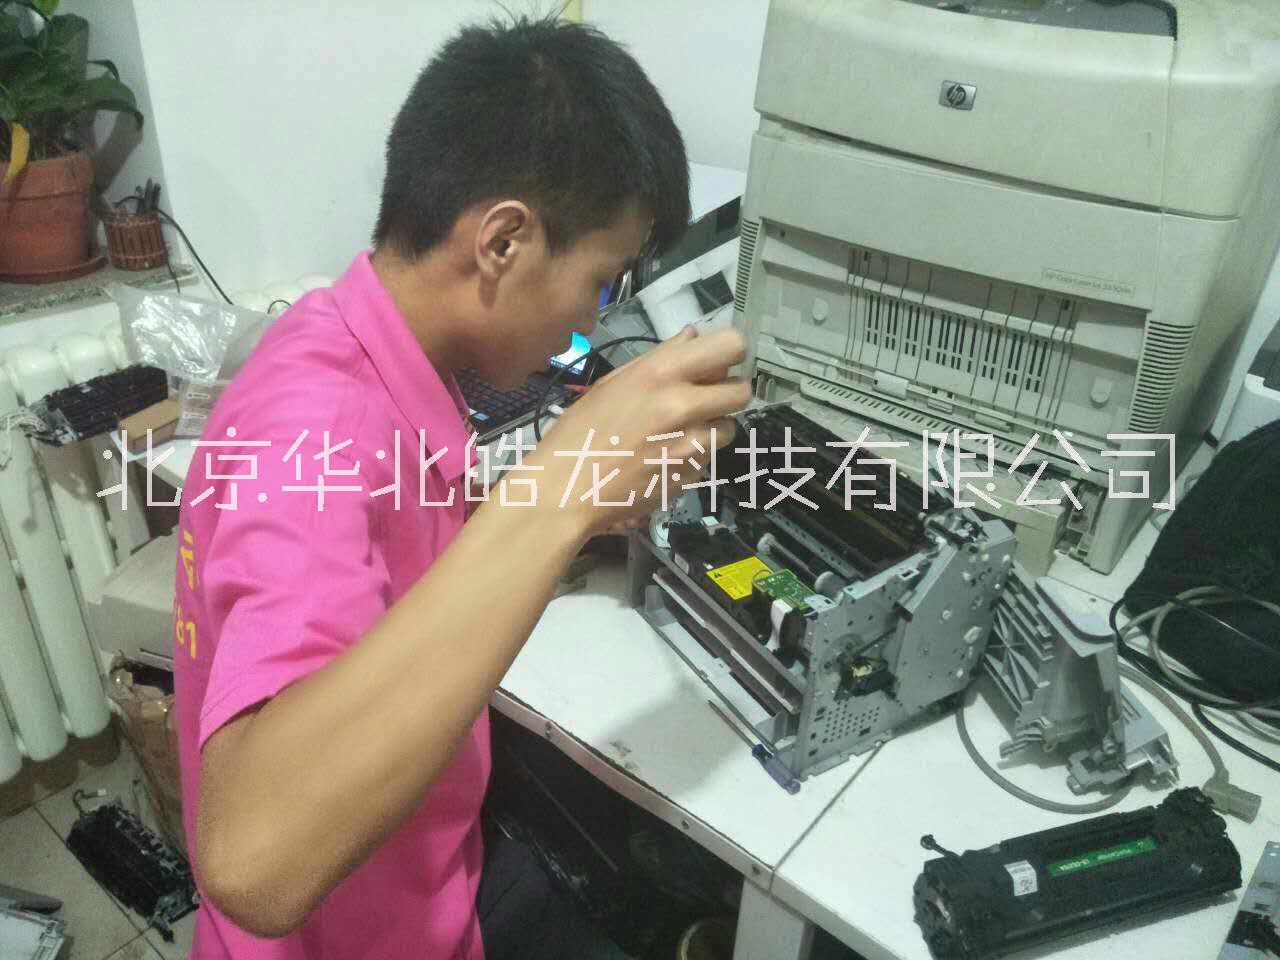 北京OKI7000F+打印机维修 检测 保养